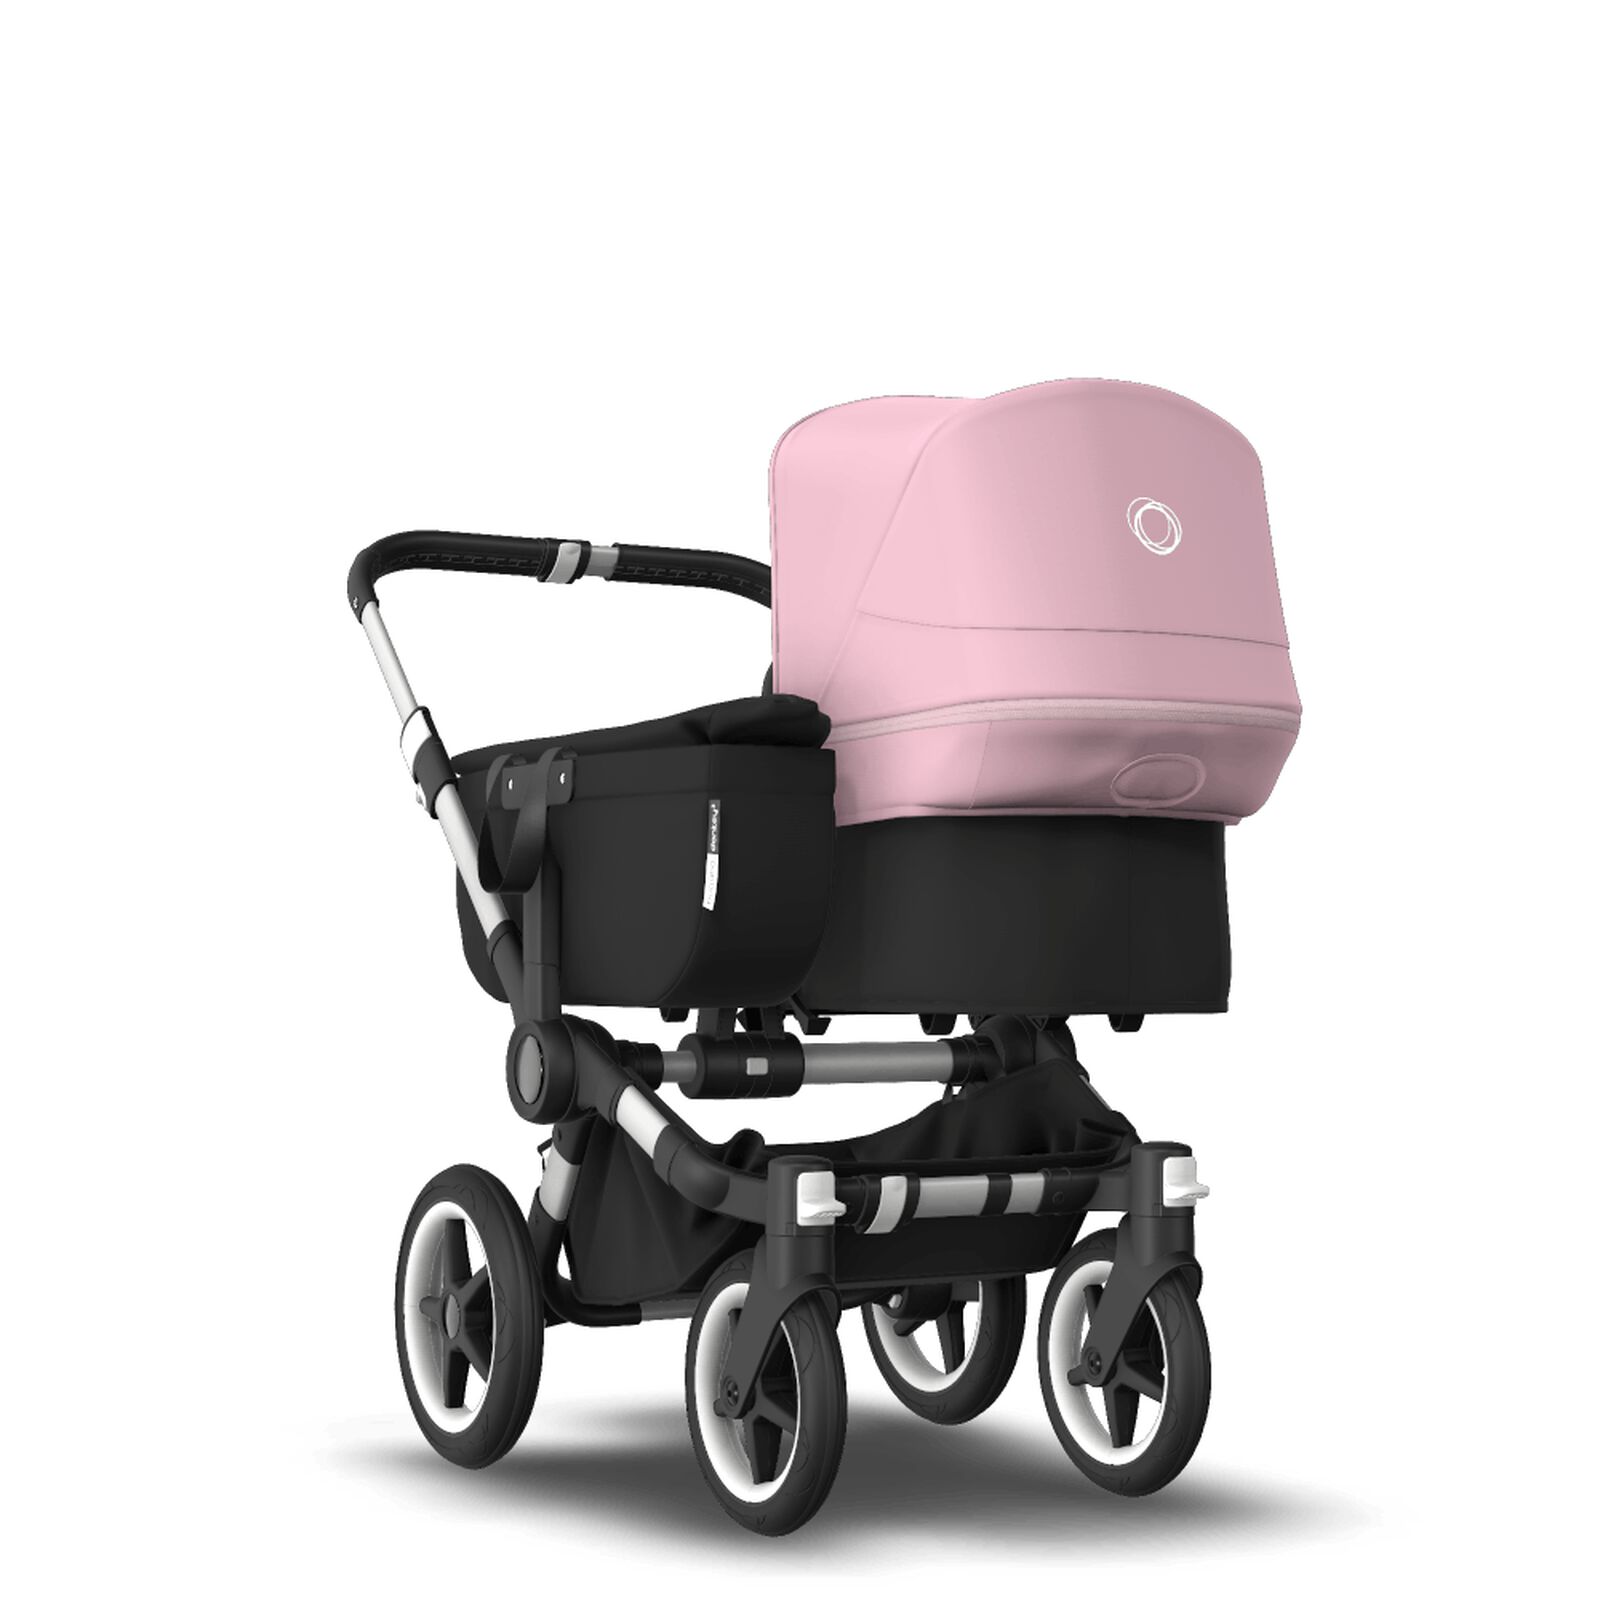 Verloren hart ventilatie Raap Bugaboo Donkey 3 Mono kinderwagen met wieg en stoel Soft pink zonnekap,  black bekleding, aluminum onderstel | Bugaboo